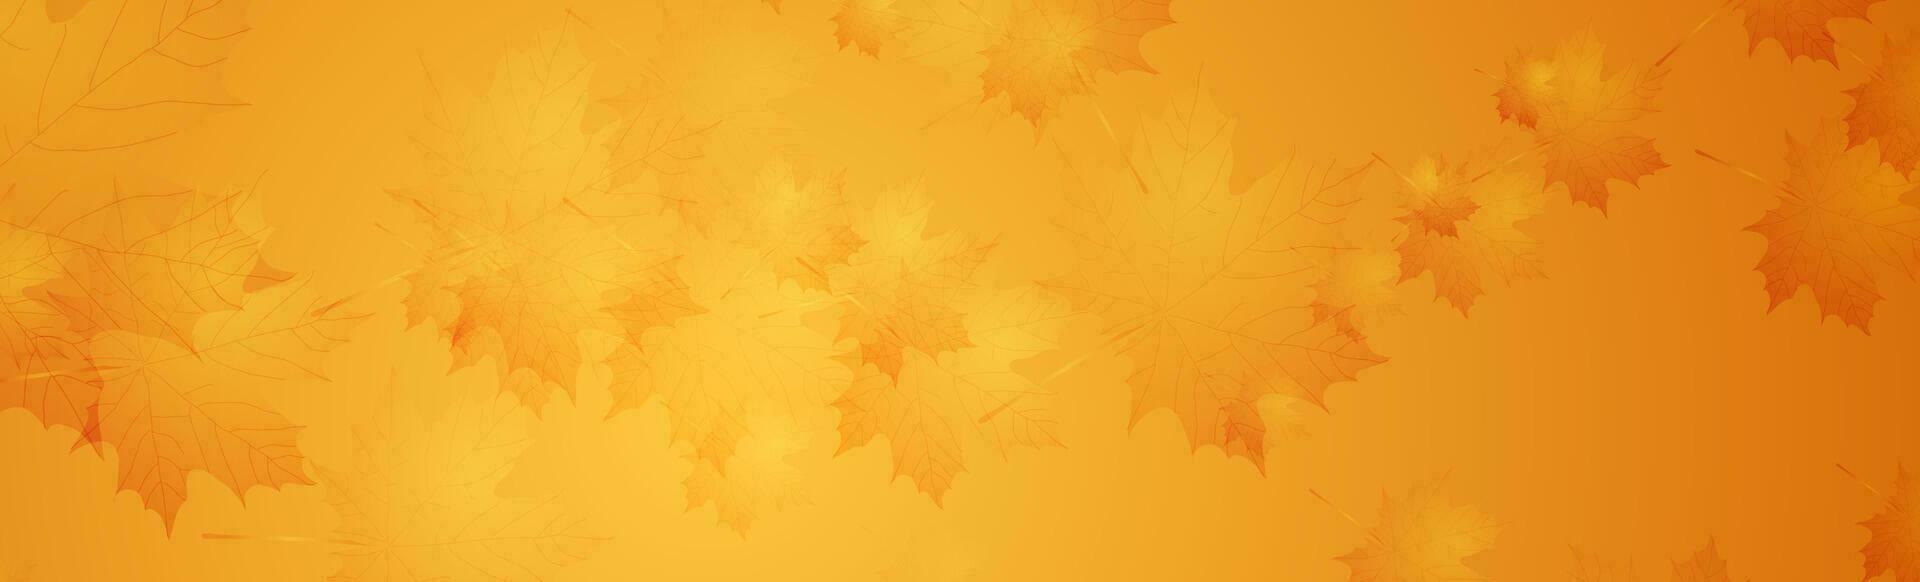 dourado laranja mínimo outono fundo com bordo folhas vetor